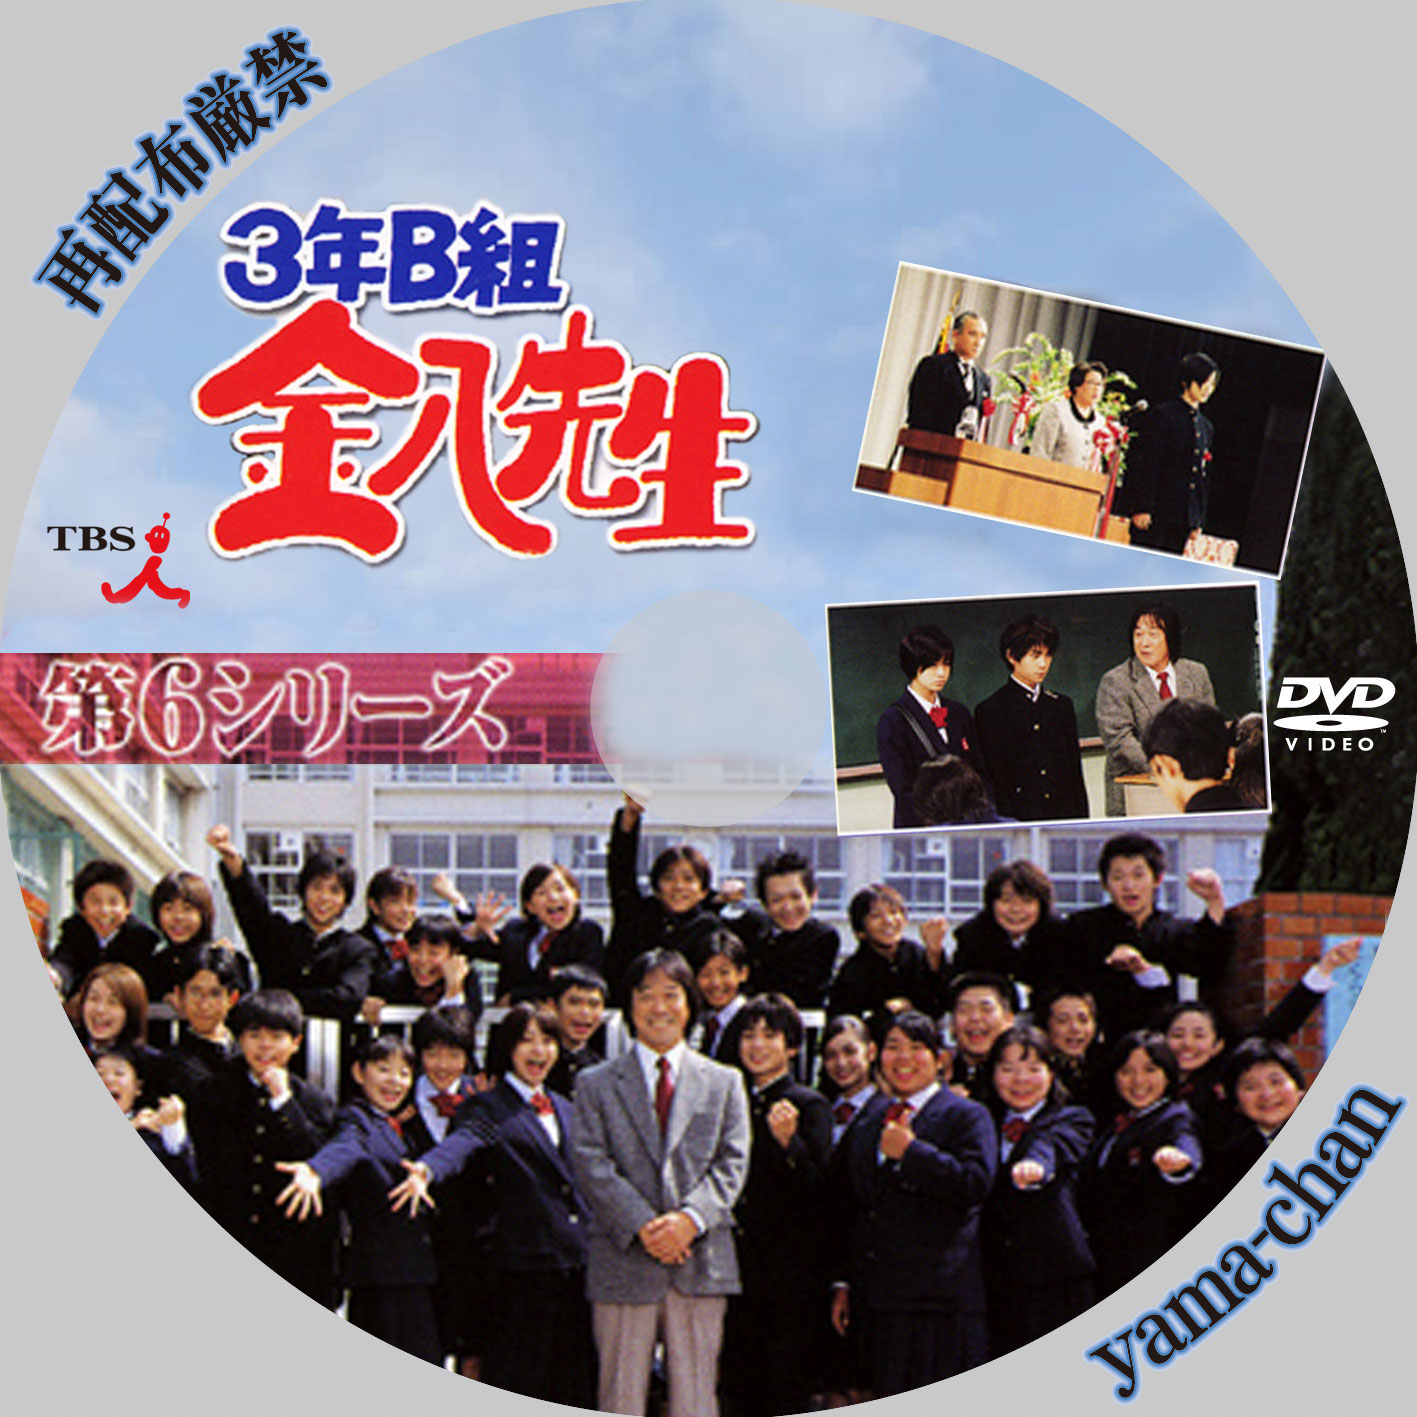 3年B組 金八先生 第5シリーズ DVD-BOX - TVドラマ